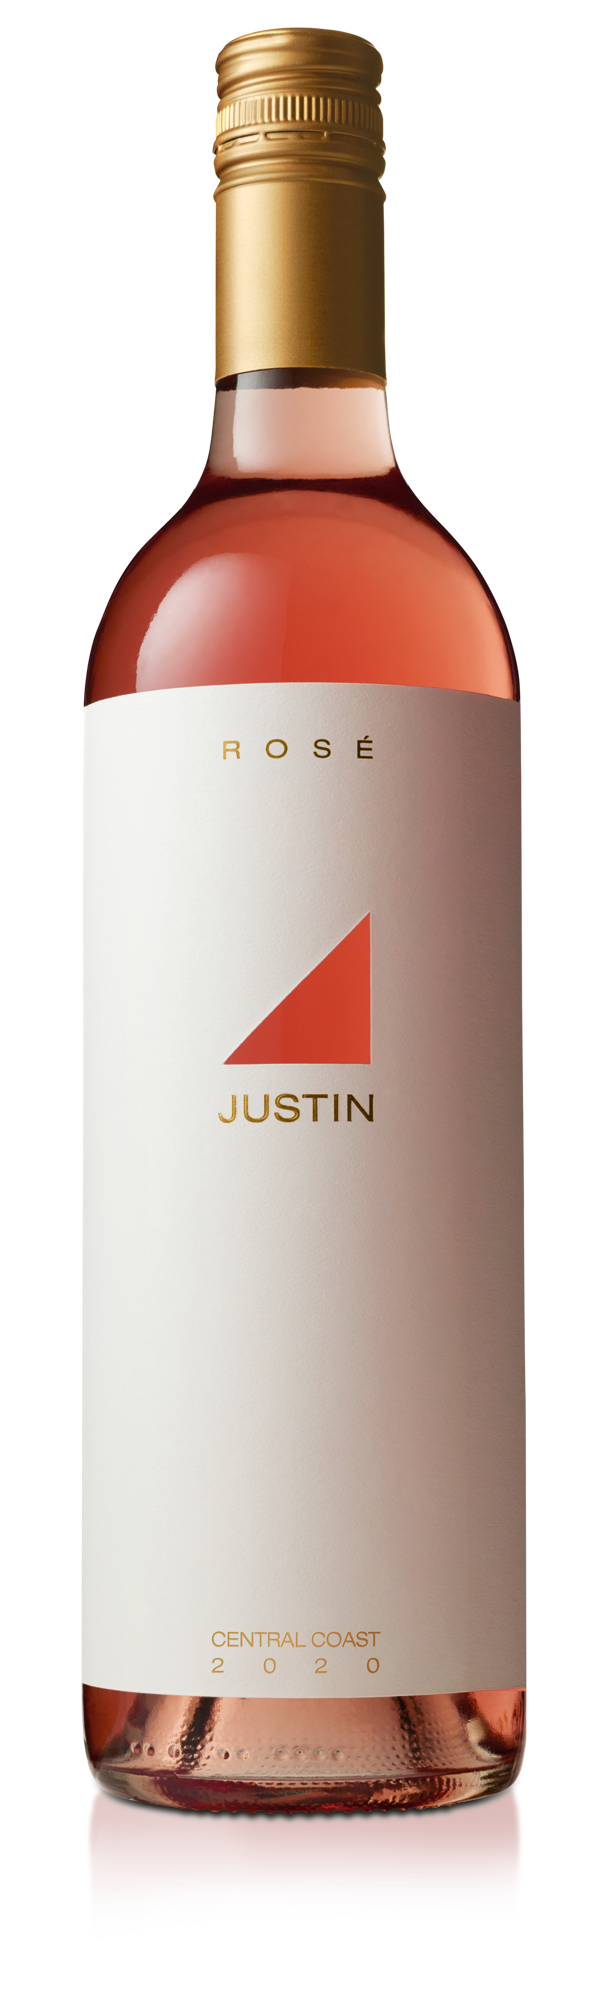 justin rose bottle